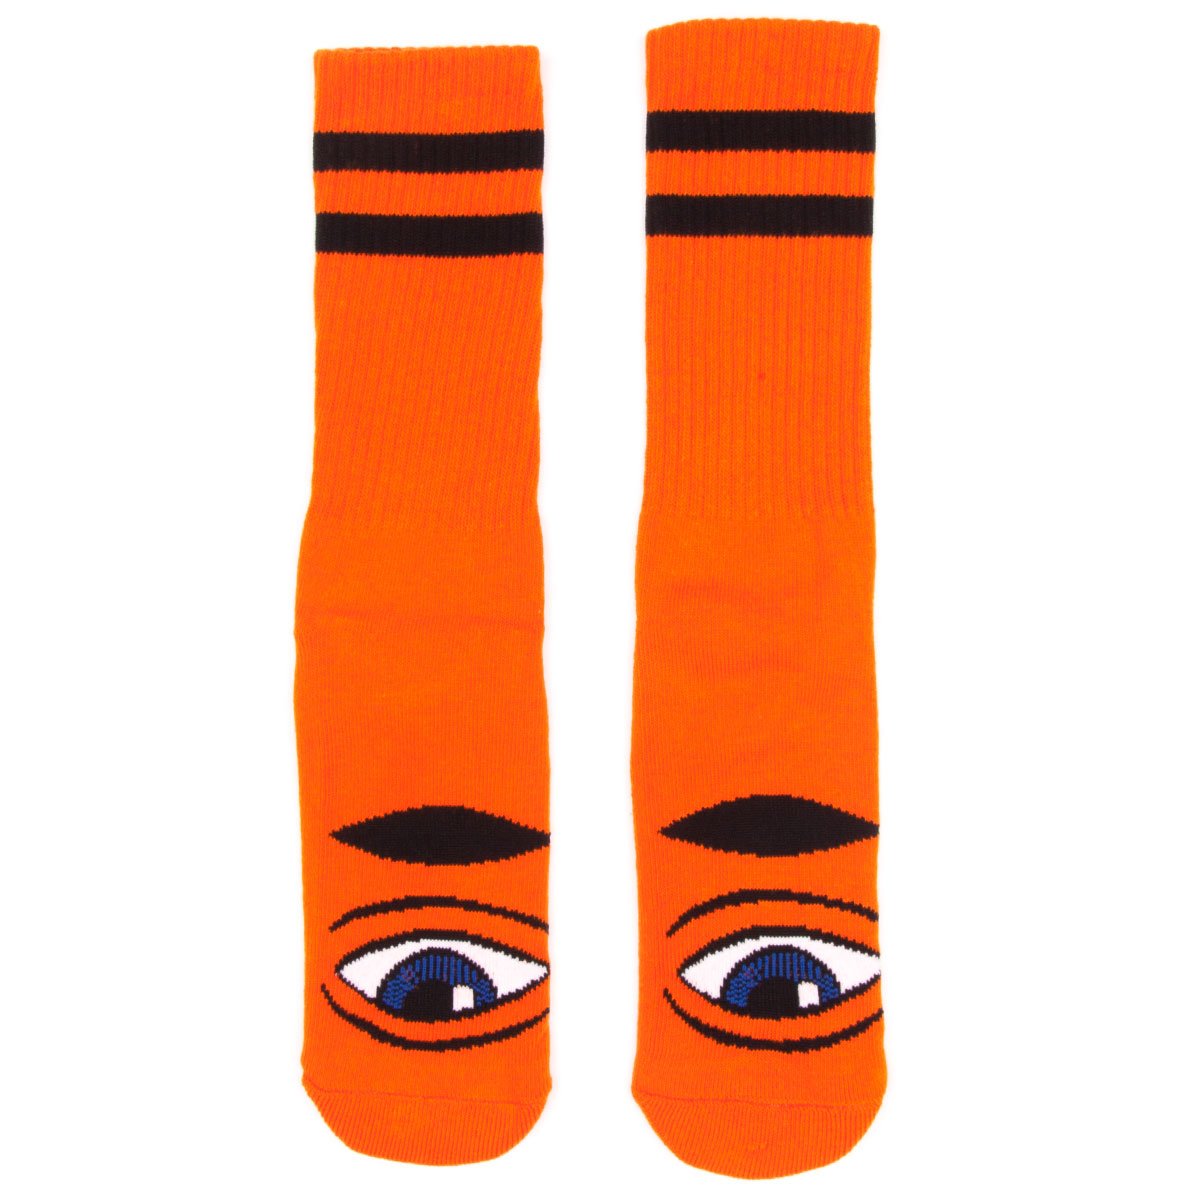 Toy Machine Sect Eye Socks - Orange image 1